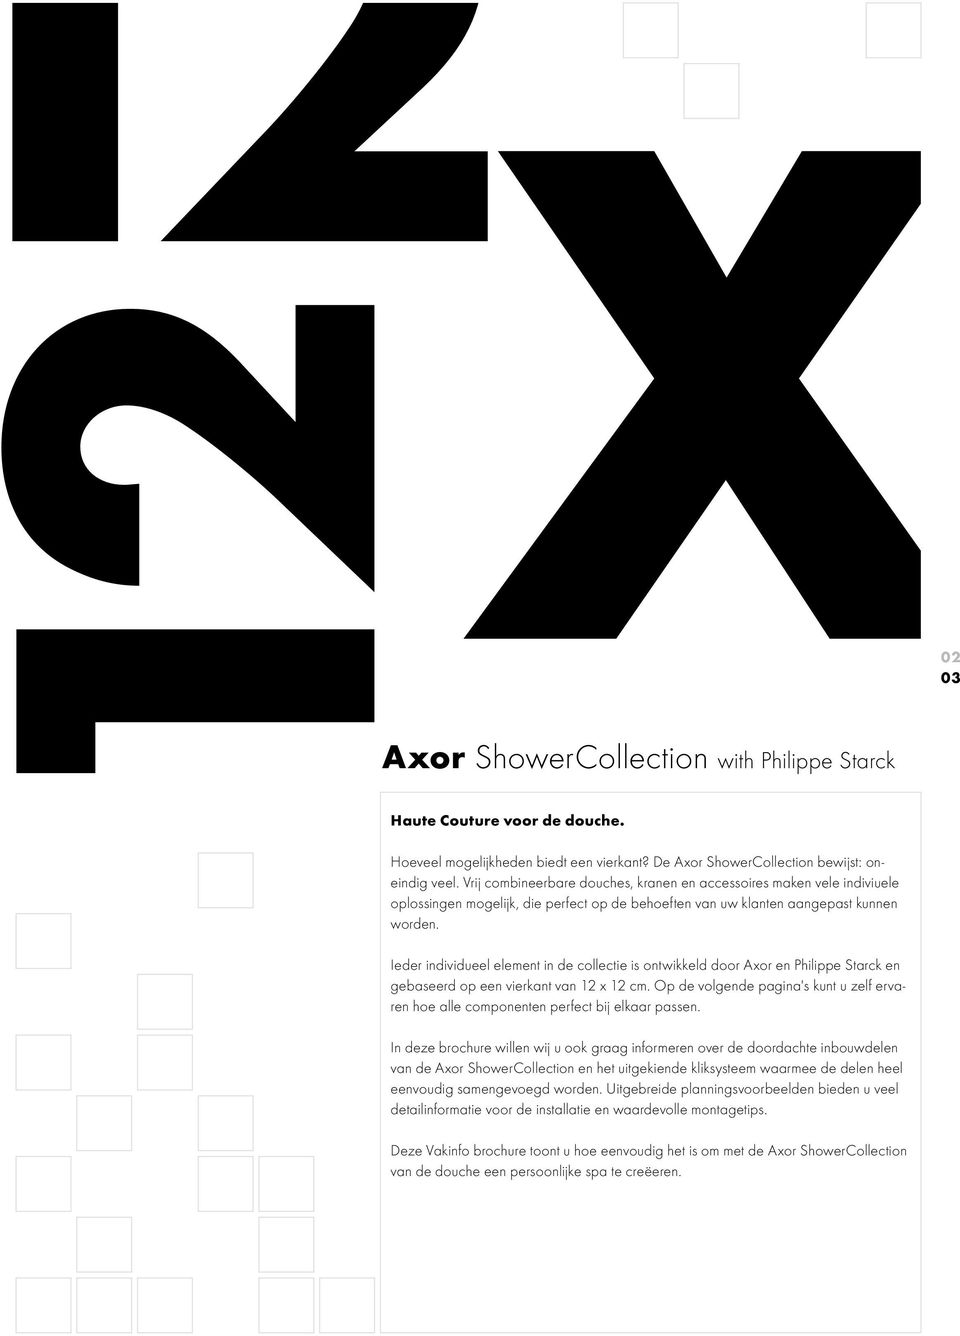 02 03 Ieder individueel element in de collectie is ontwikkeld door Axor en Philippe Starck en gebaseerd op een vierkant van 12 x 12 cm.